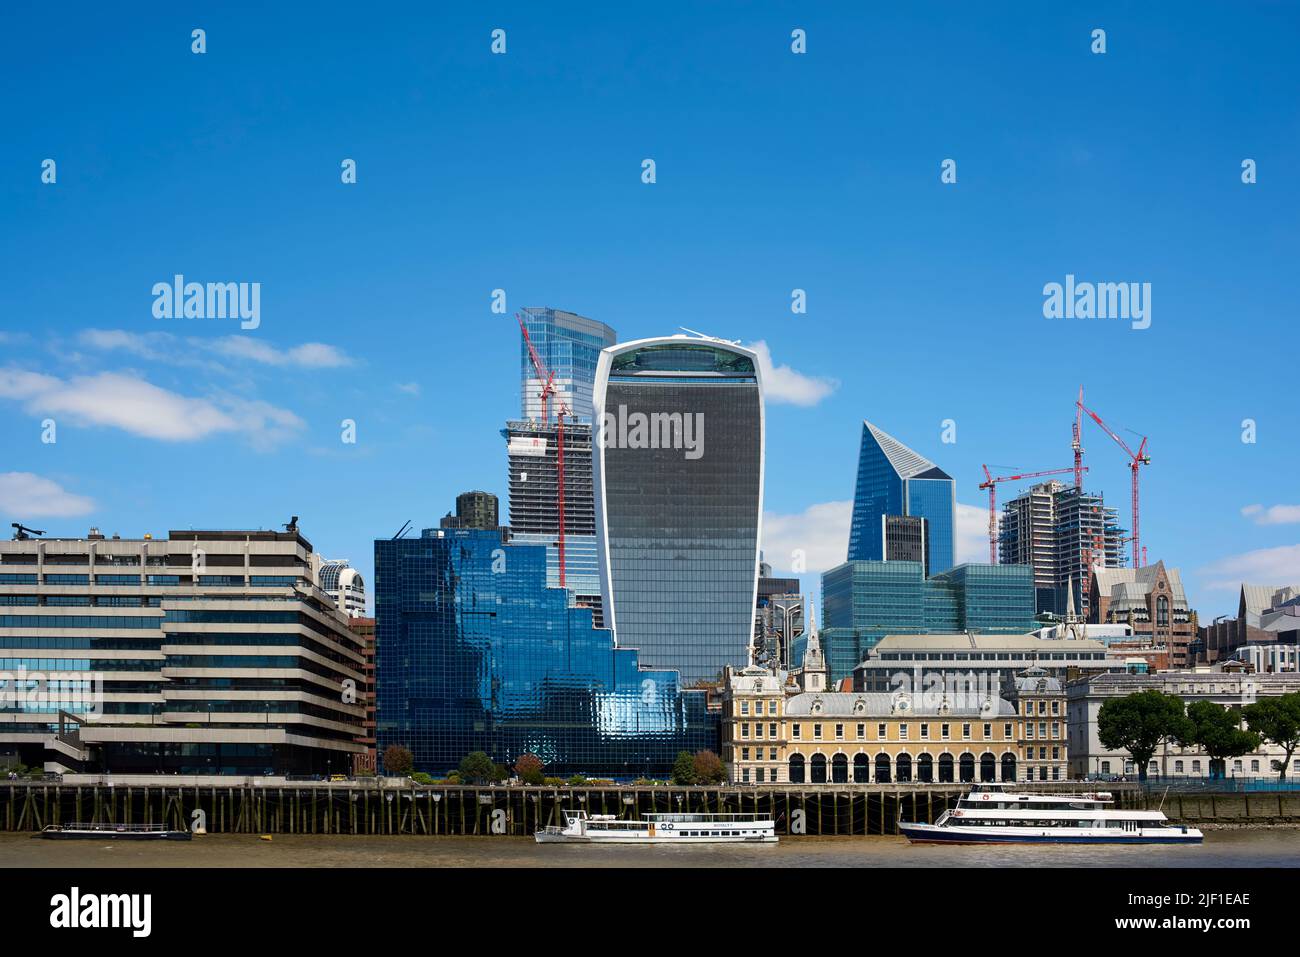 Ciudad de Londres y la Torre Walkie Talkie de South Bank of the Thames, Londres, Reino Unido Foto de stock